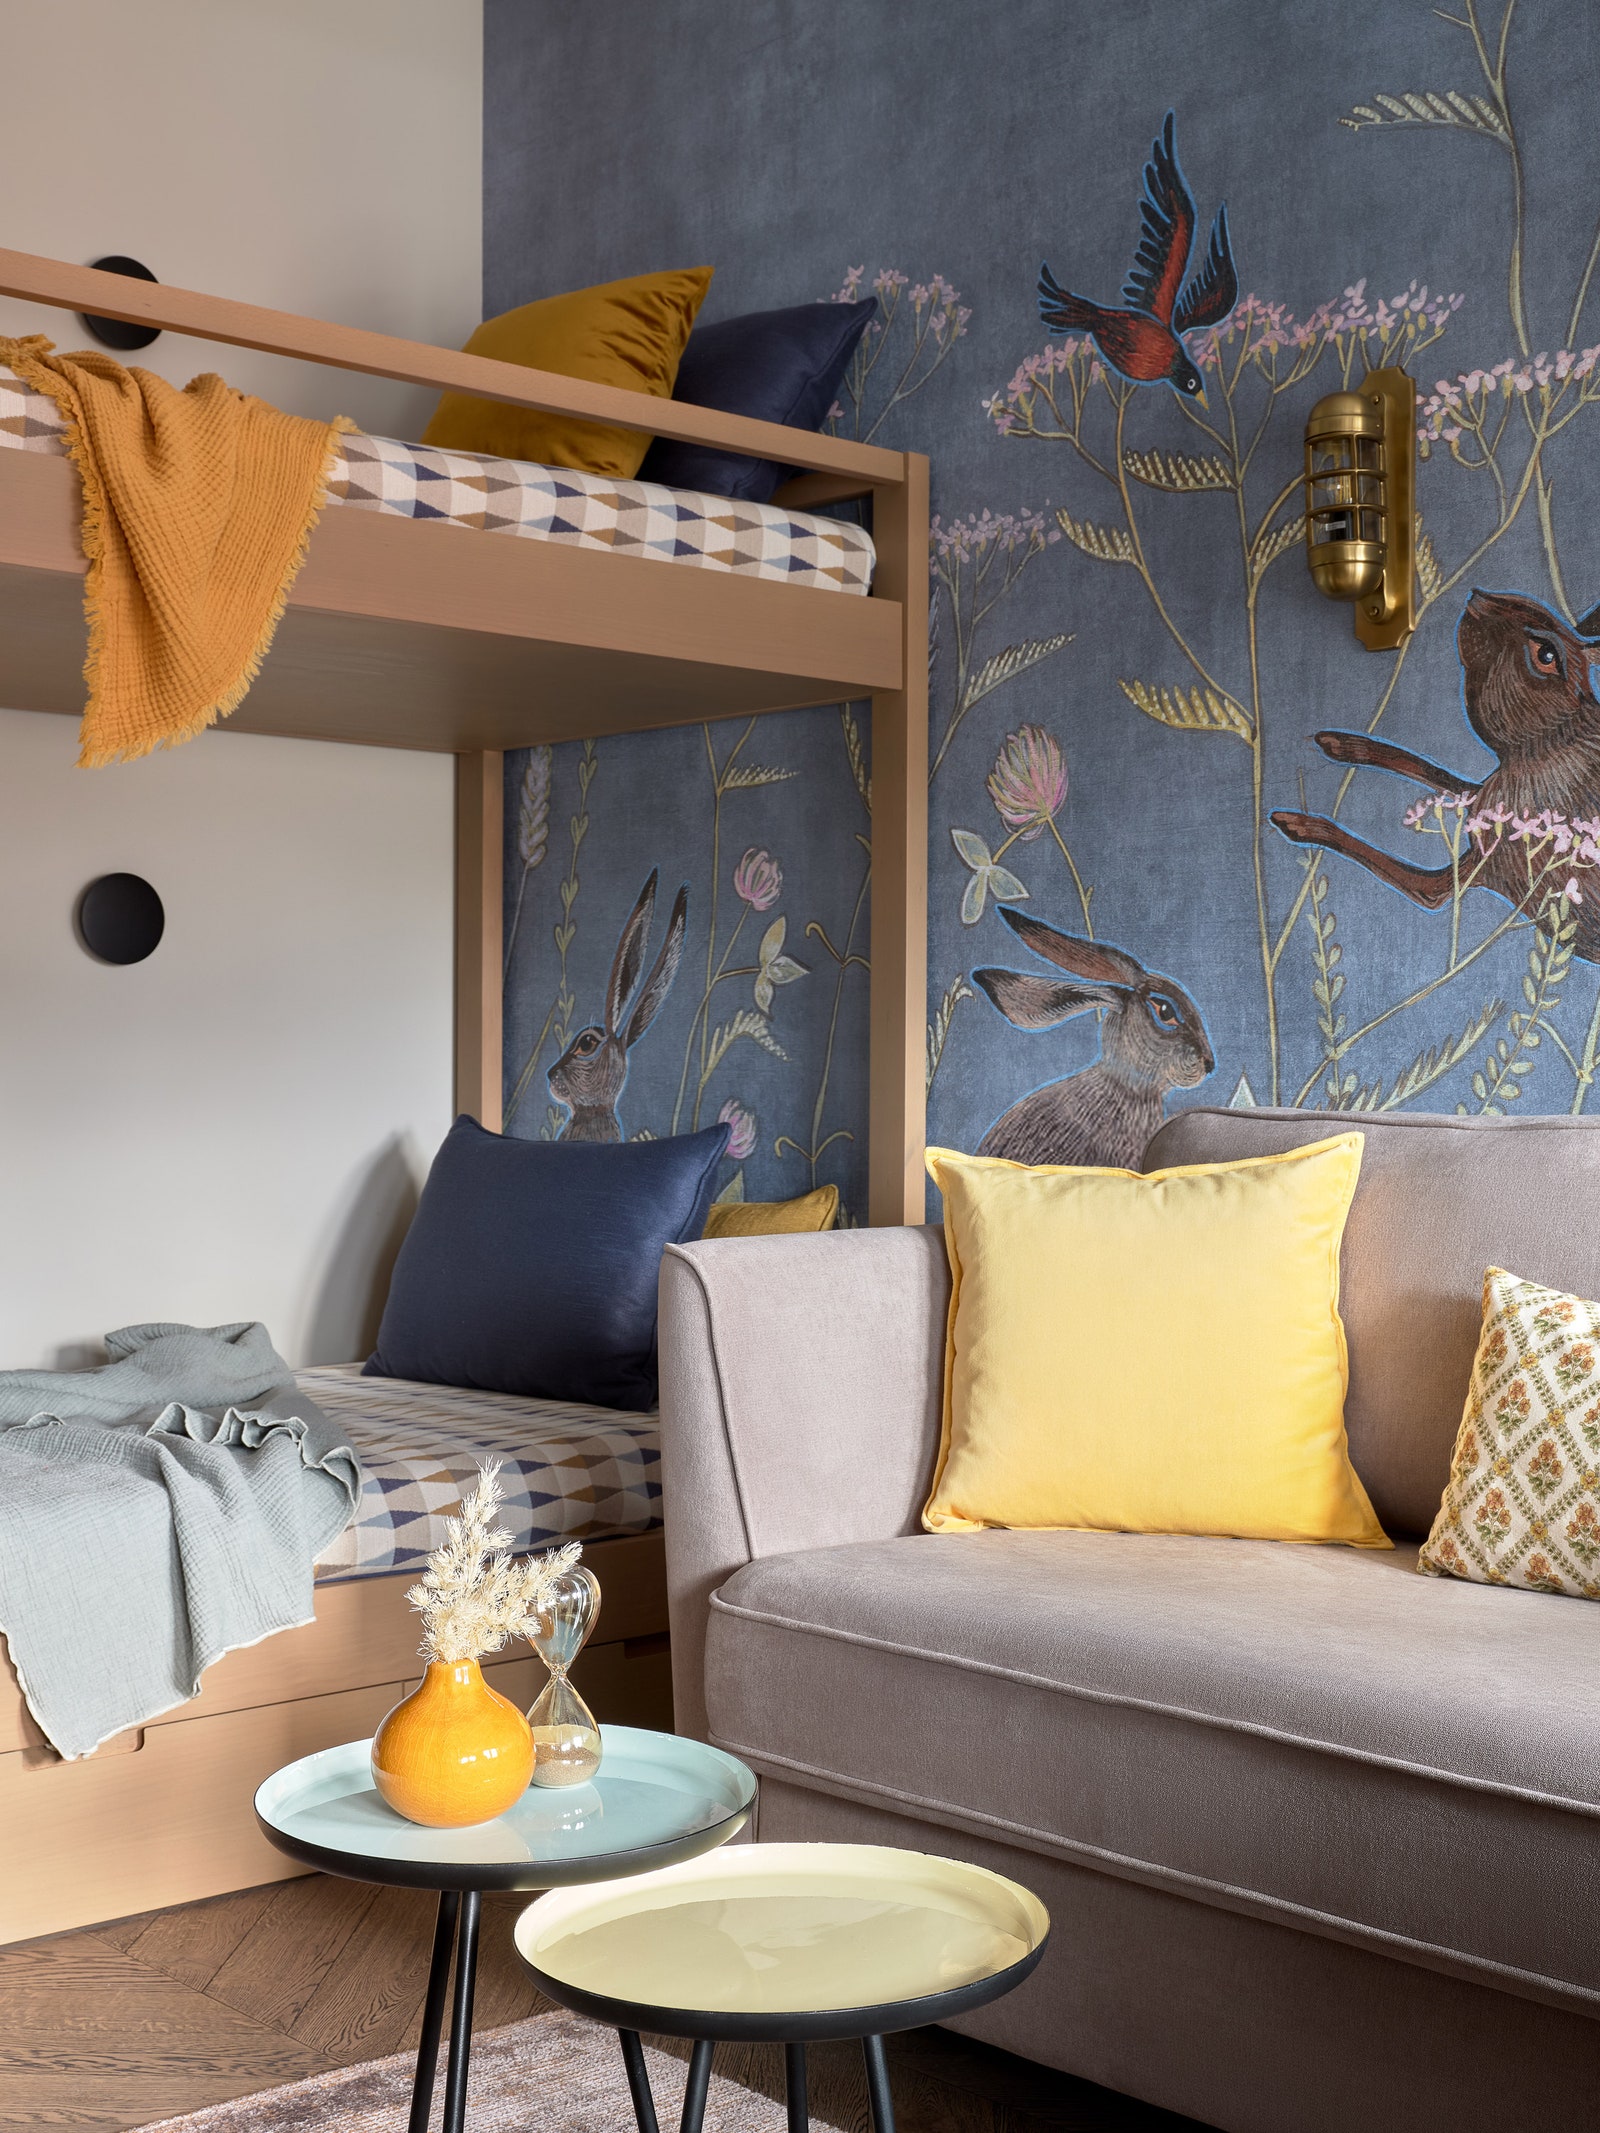 Спальня мальчиков. Двухуровневая кровать Enjoy Home диван Wolsly ST SK Design ковер Gofre Rug by Gan.